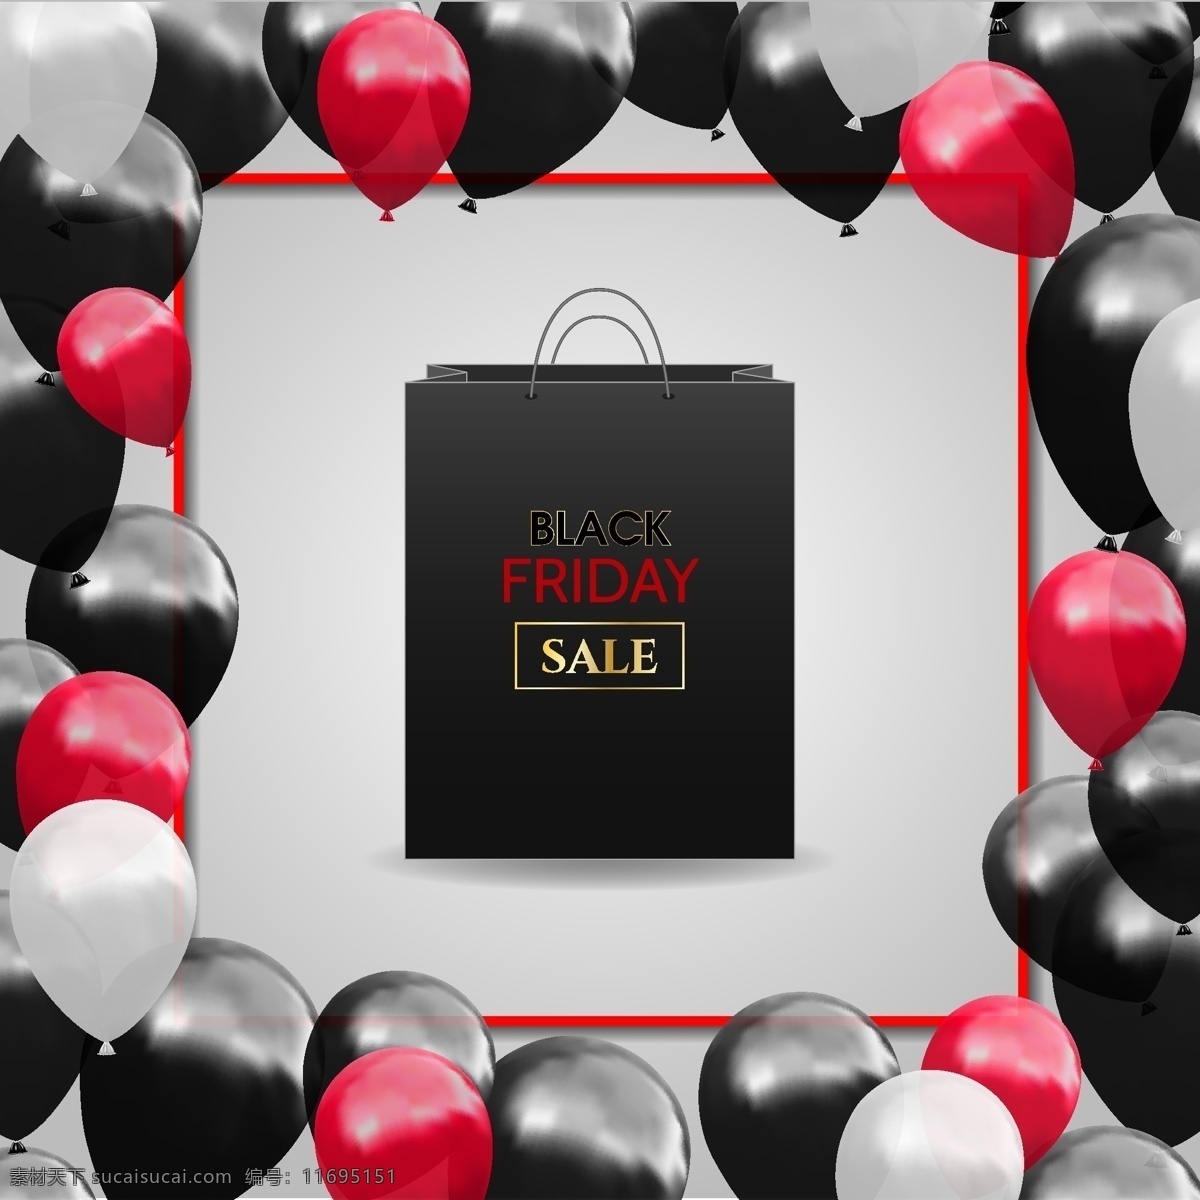 气球 袋子 商场 礼物 卡 矢量 黑色 红色 平面素材 商务 商业 设计素材 矢量素材